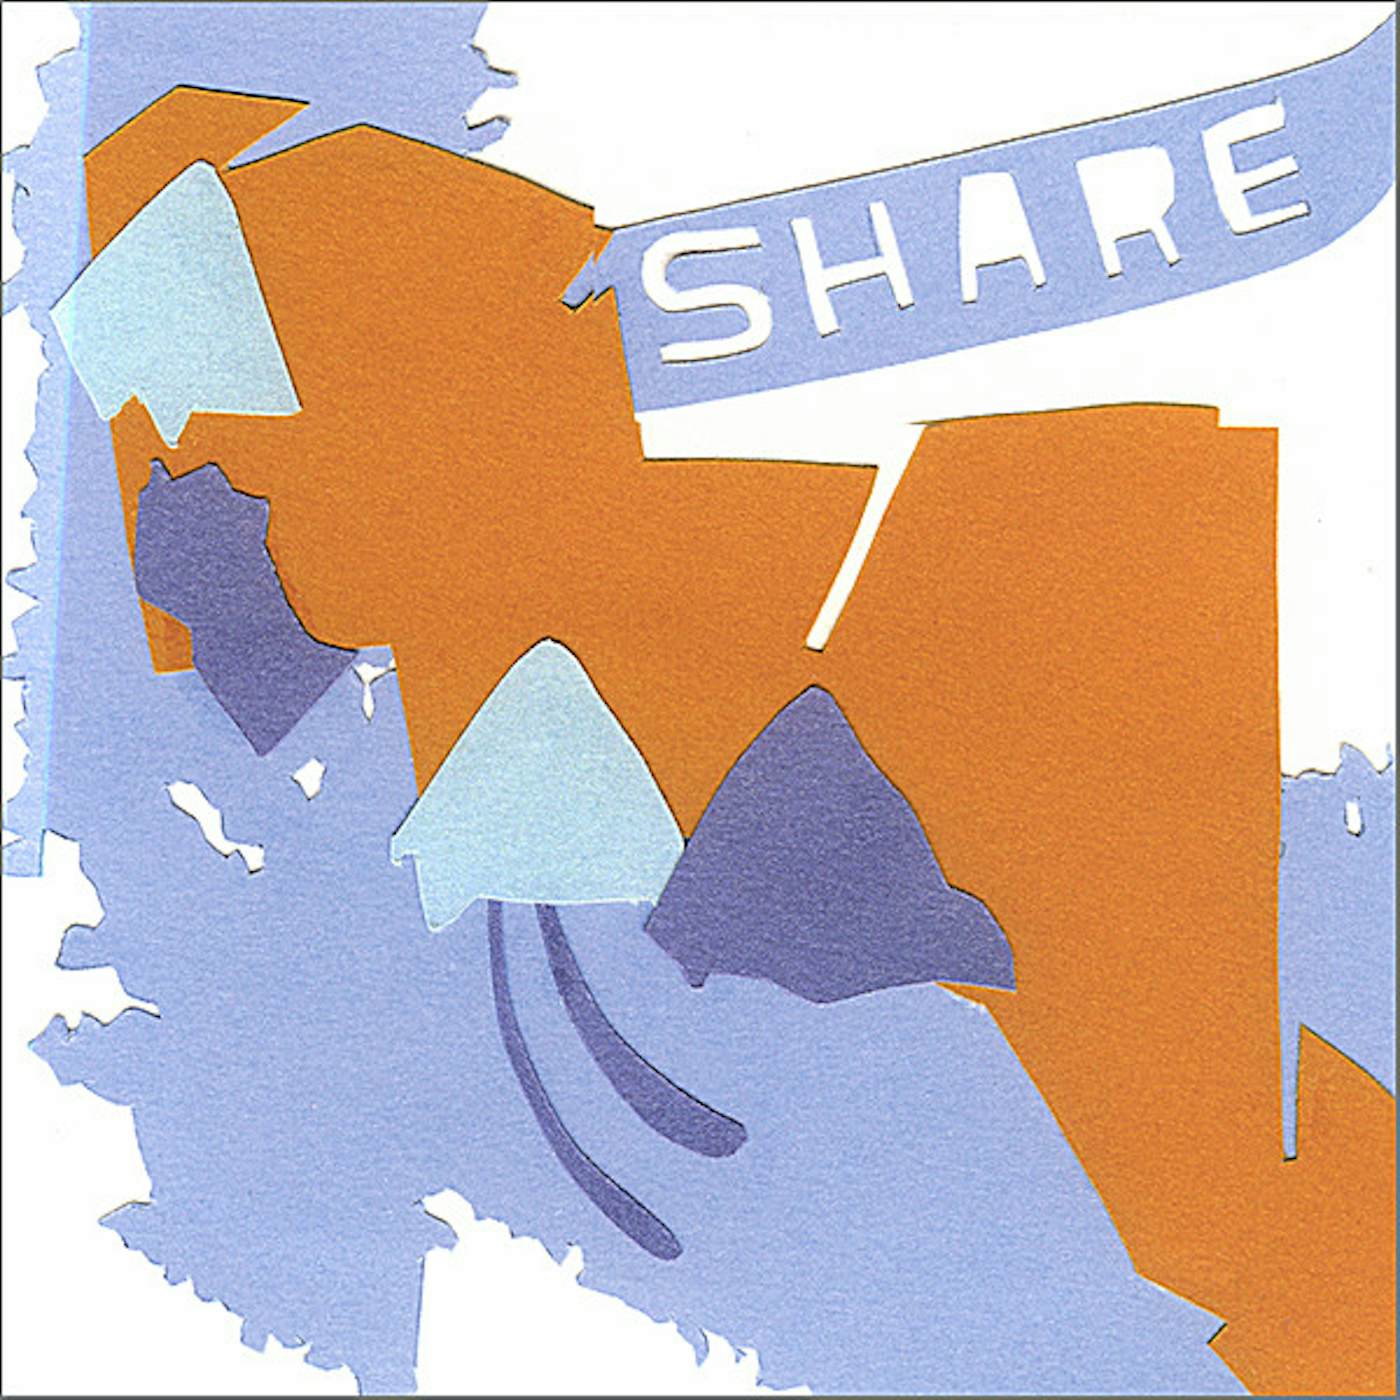 Share! PEDESTRIAN CD